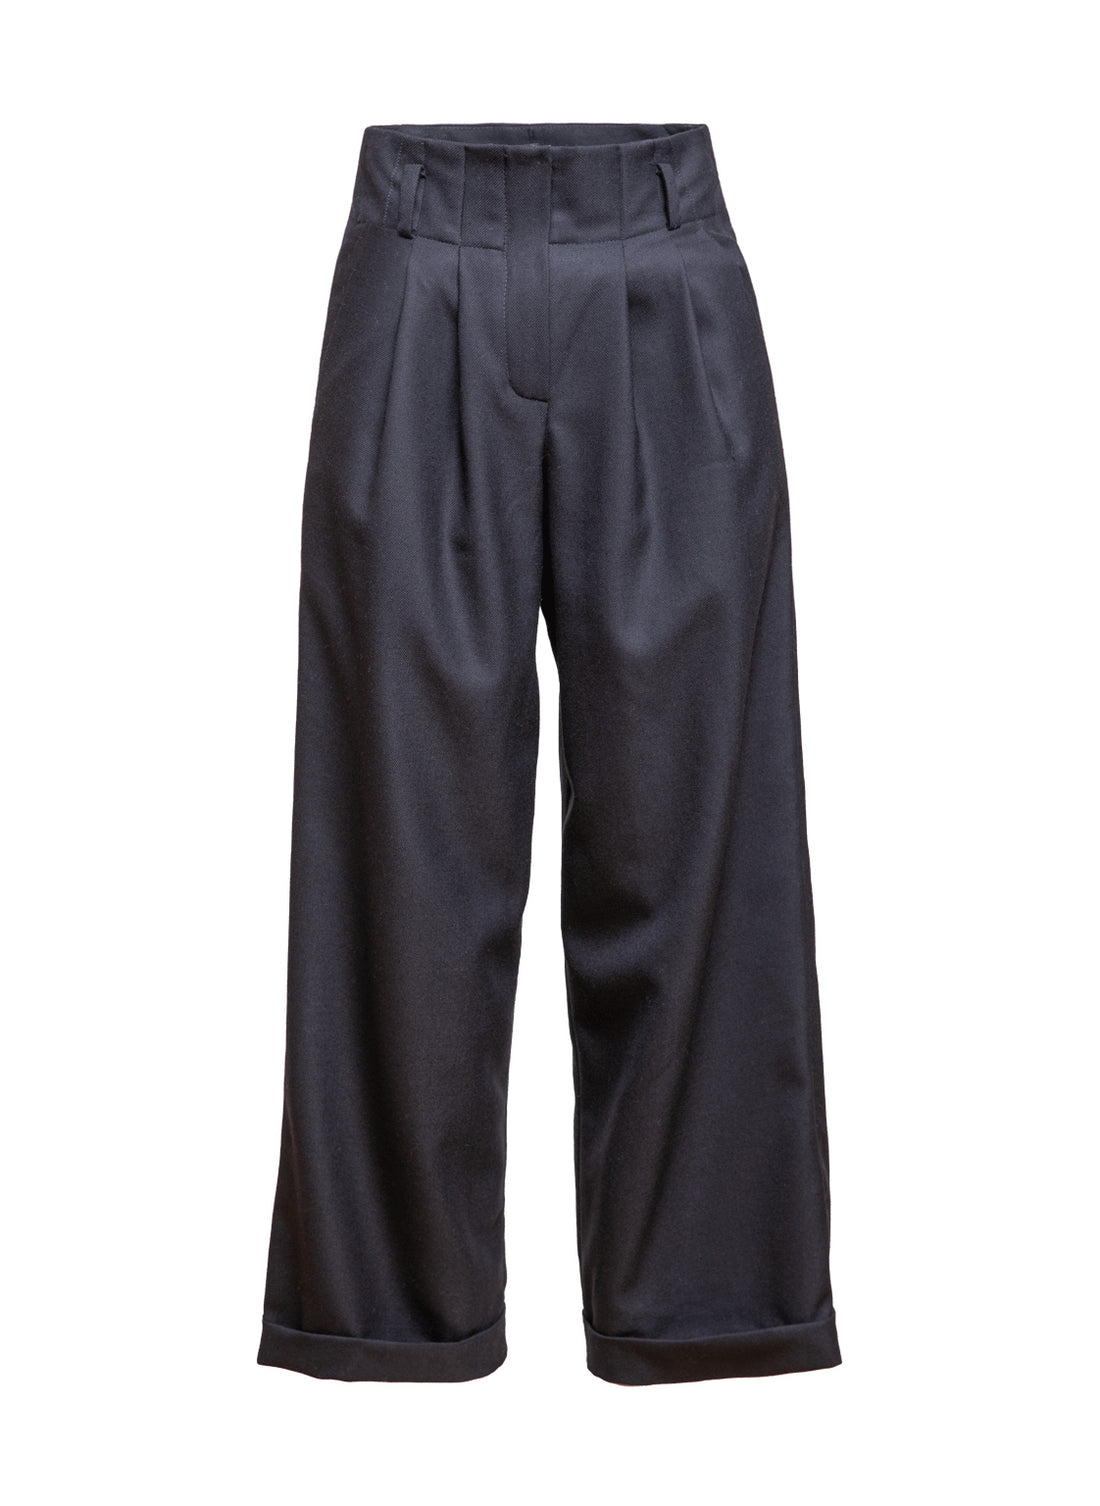 Schwarze Woll-Culotte mit hohem Bund Bundfalten, seitlichen Taschen und kleinen Aufschlägen am Hosenbein